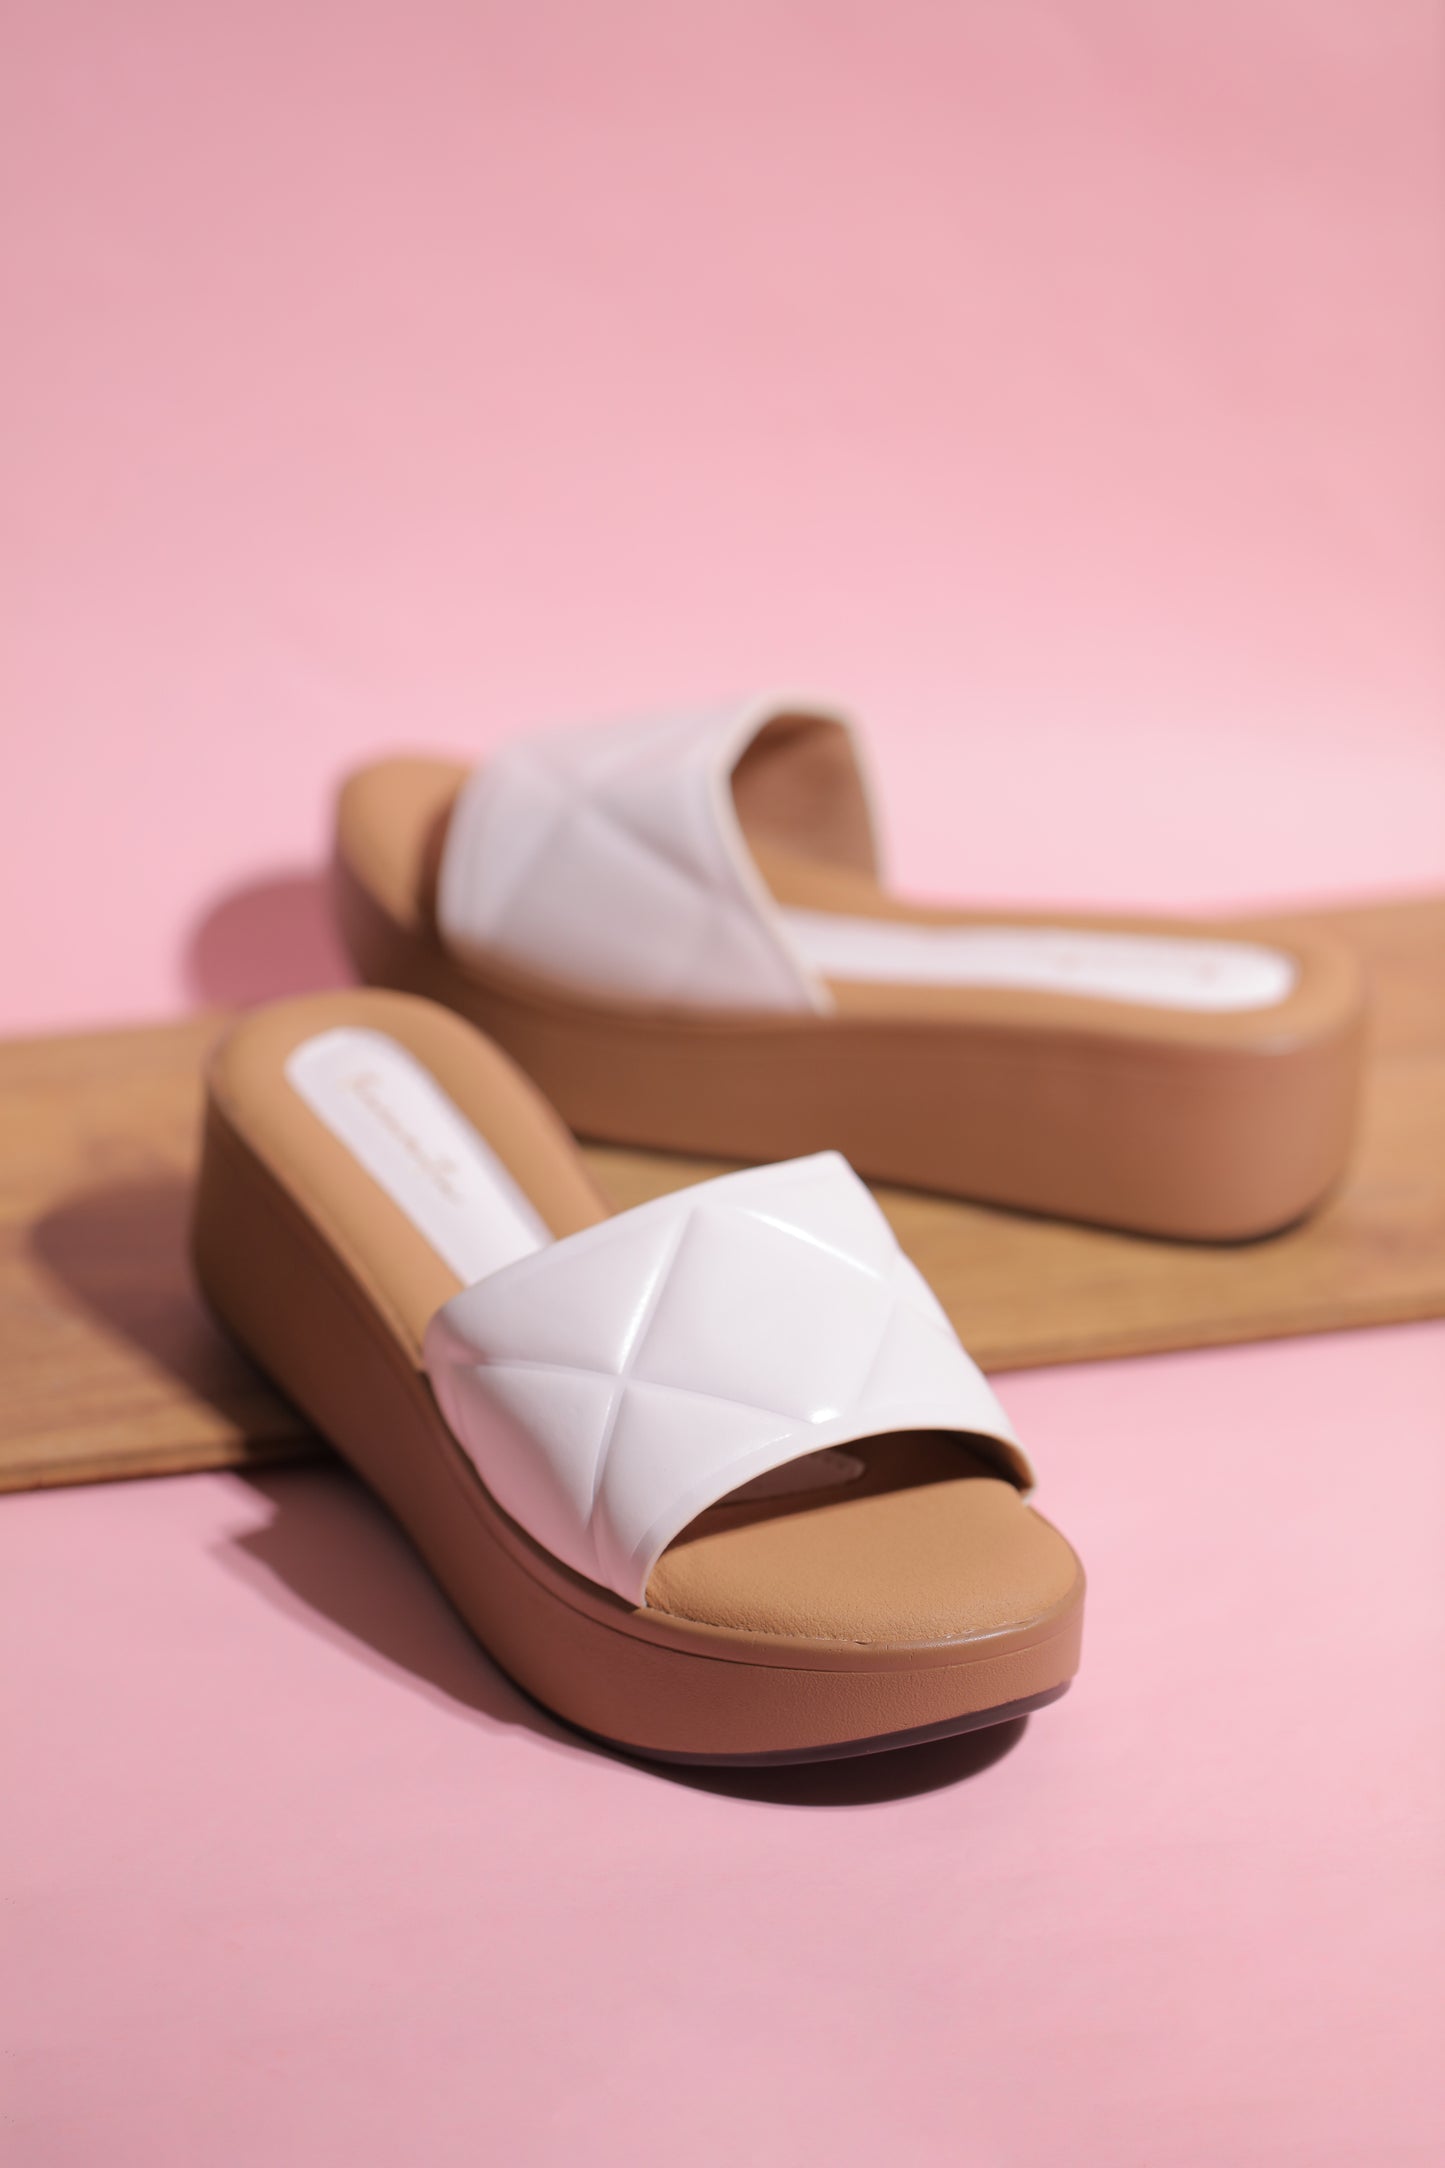 Mista flatform in white heel sandals